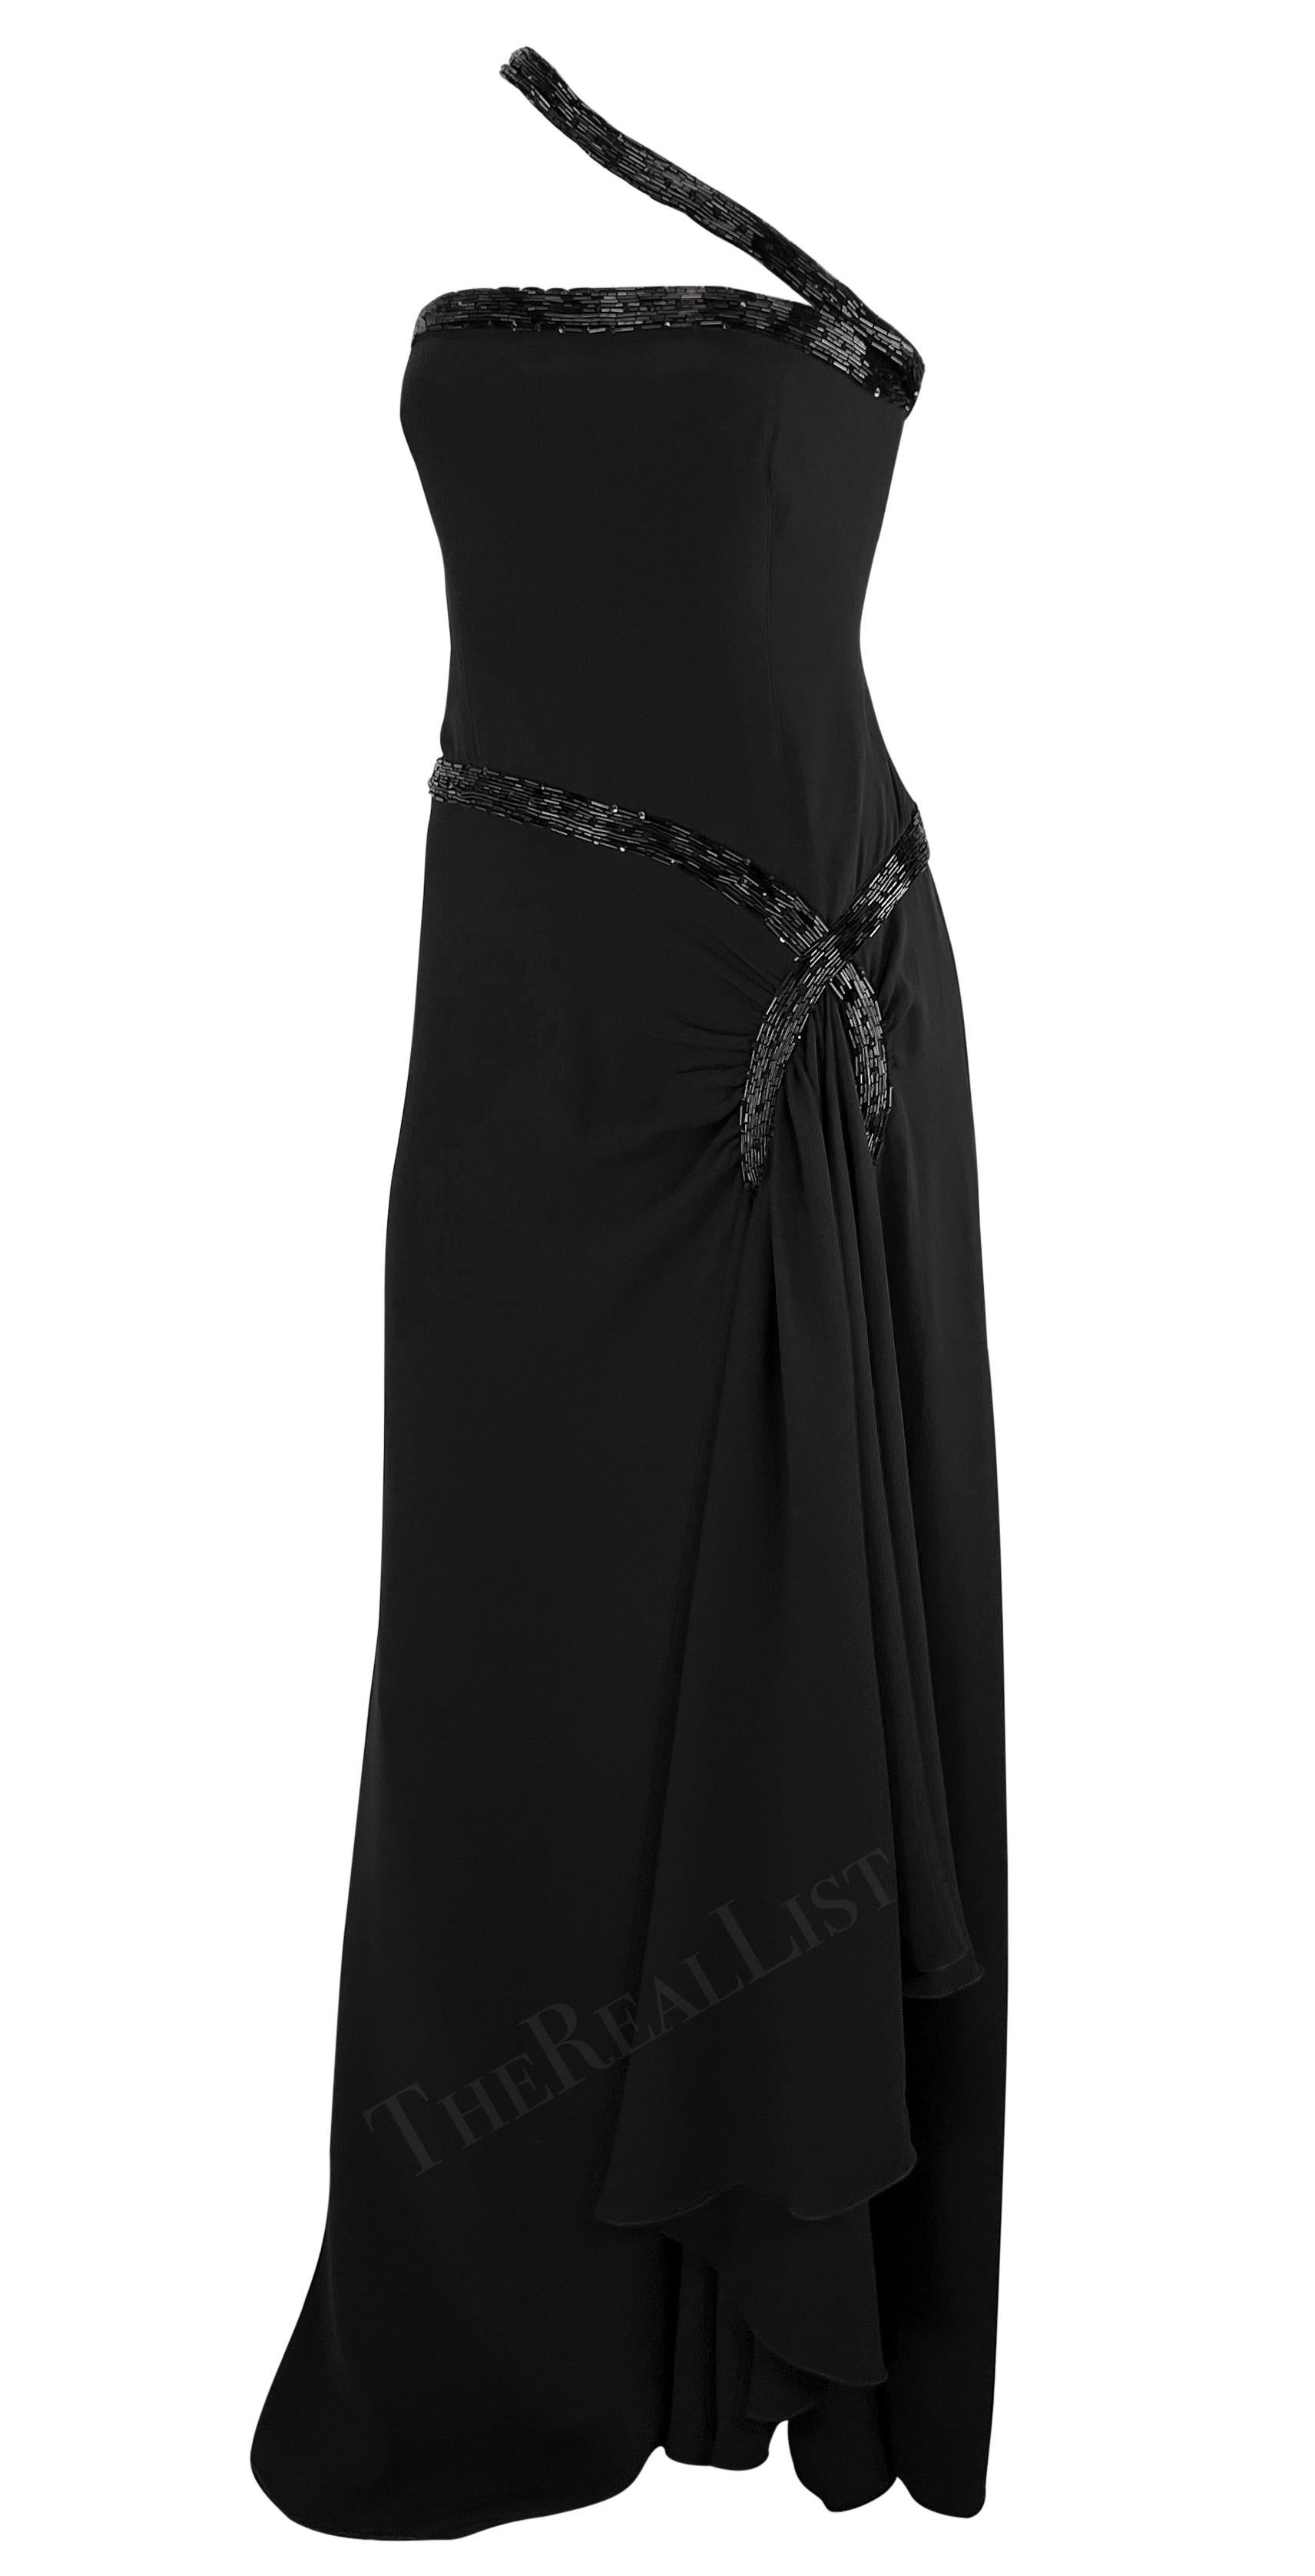 Wir präsentieren ein fabelhaftes bodenlanges schwarzes Perlenkleid von Valentino Garavani aus der Mitte der 2000er Jahre. Dieses atemberaubende Kleid ist mit aufwändiger schwarzer Perlenstickerei verziert, die seinen Charme noch verstärkt. Die